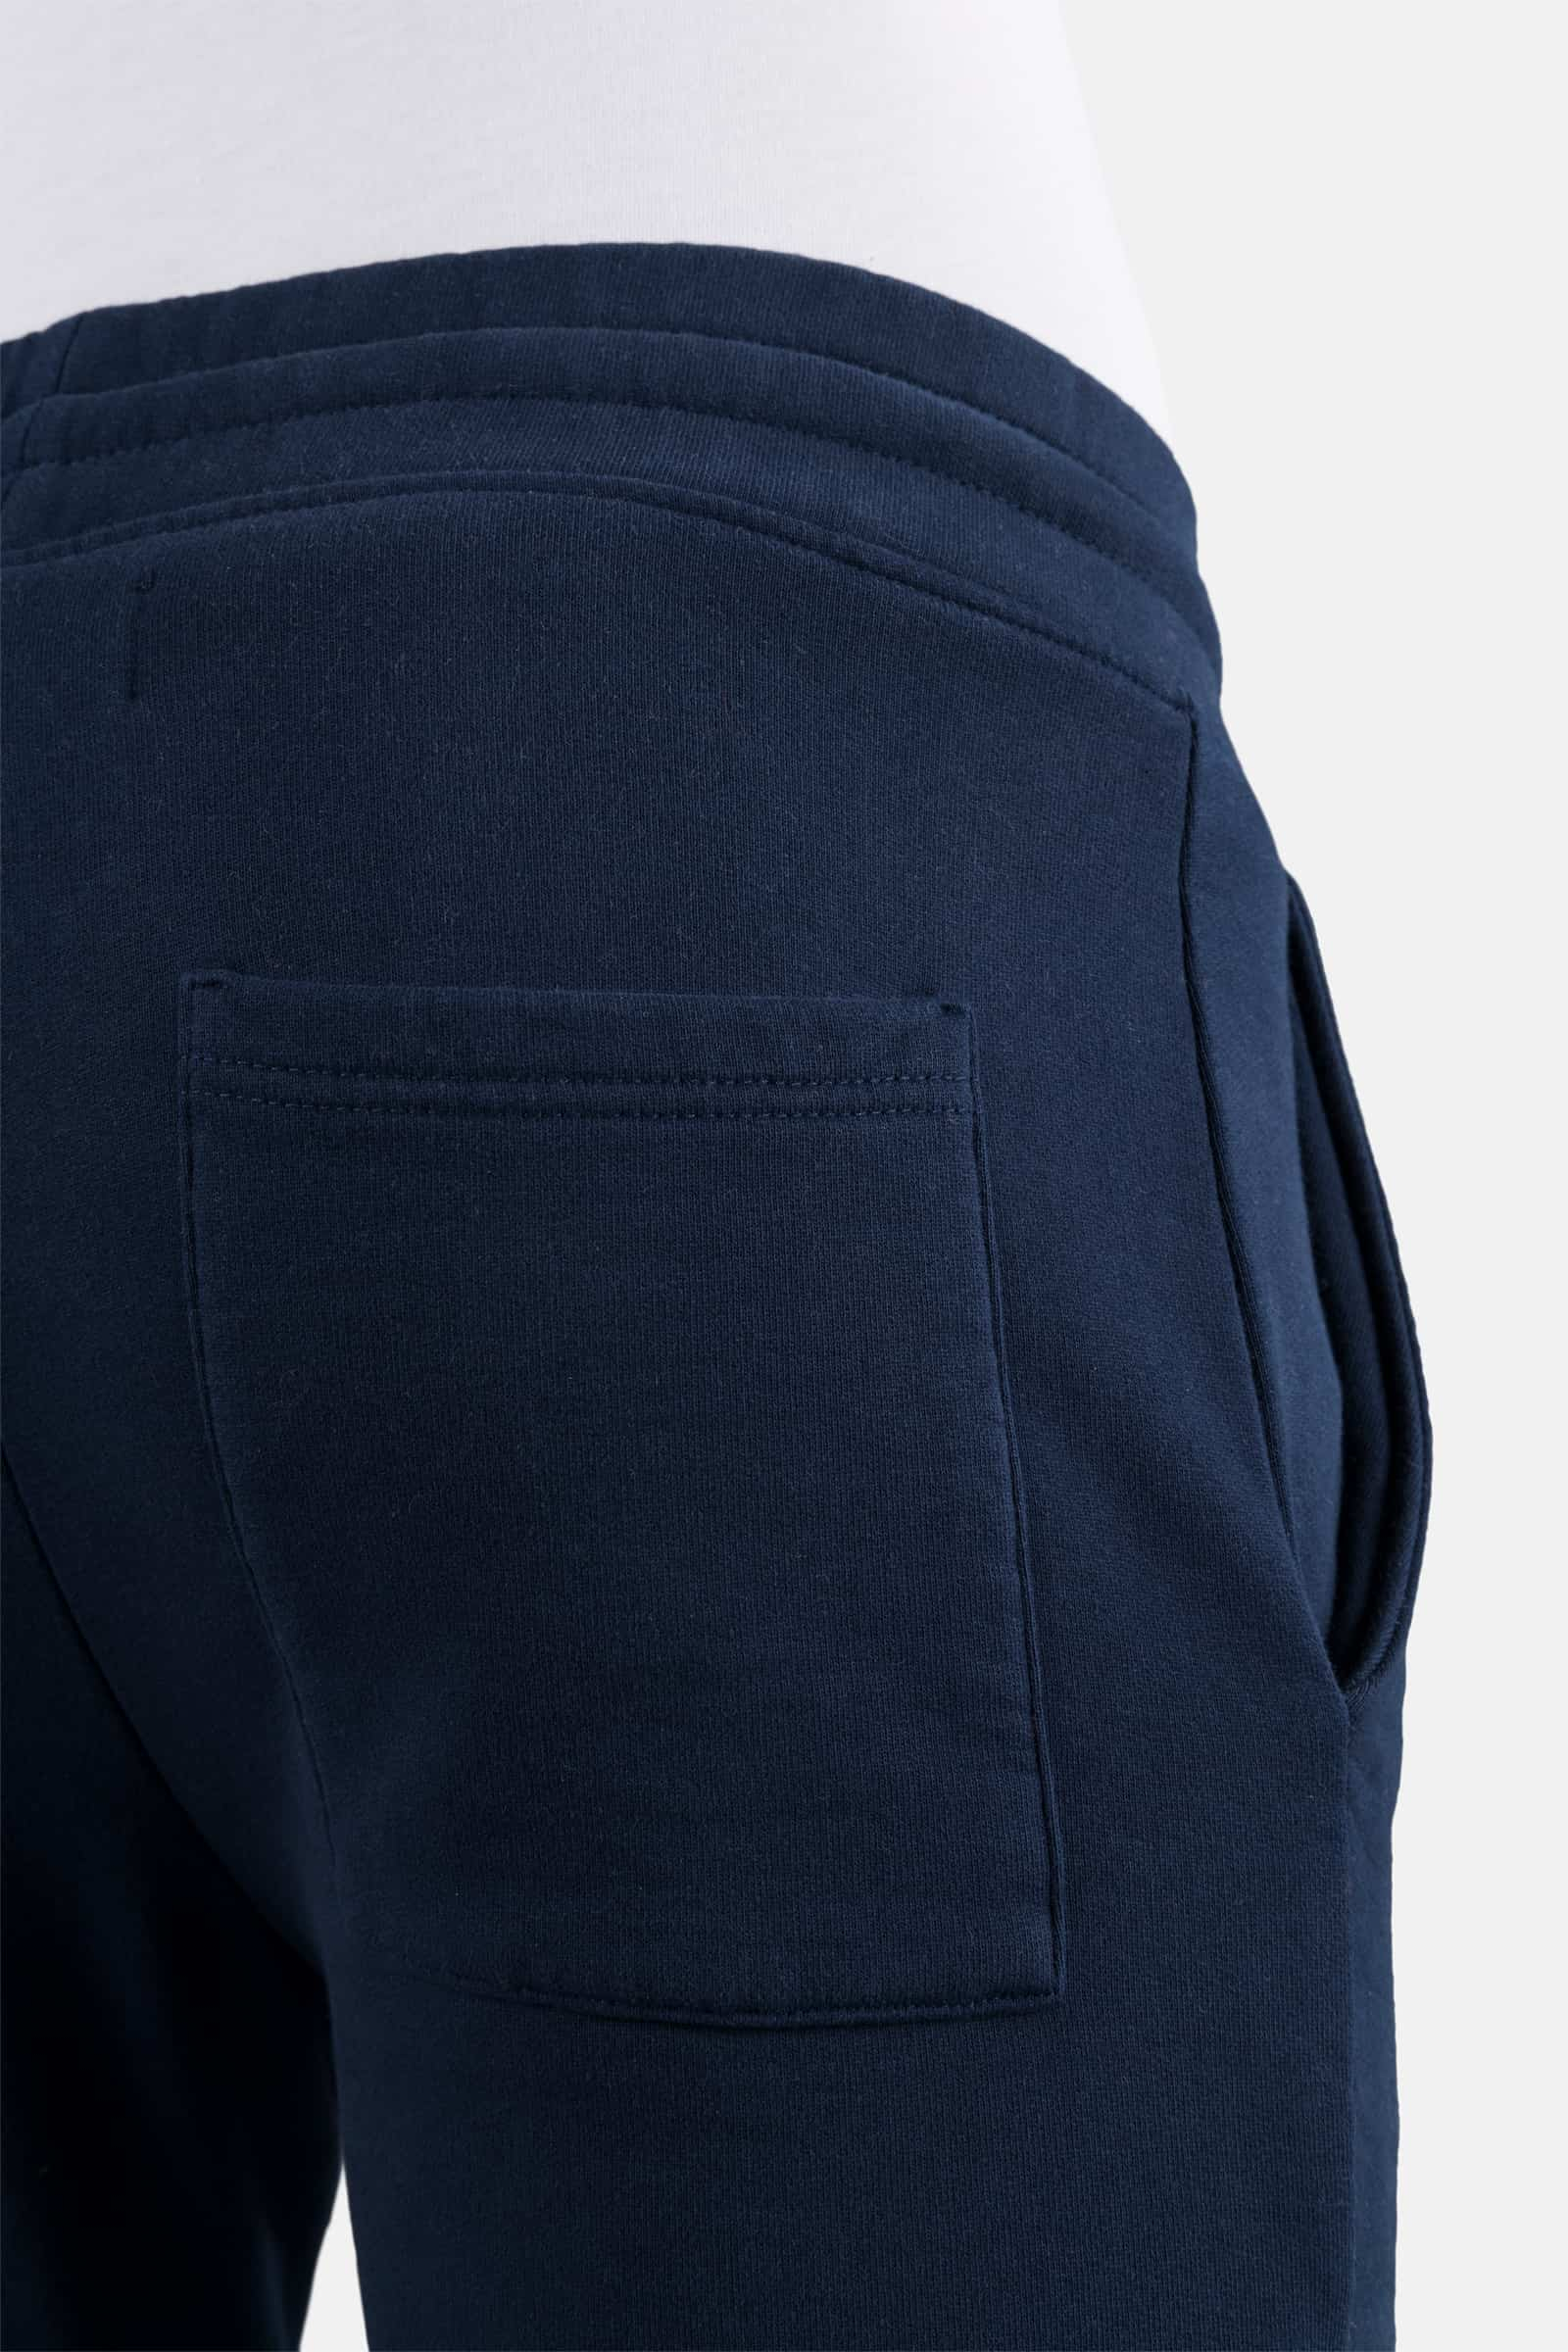 PANTALONI TUTA - BLUE NAVY - Abbigliamento sportivo | Hydrogen